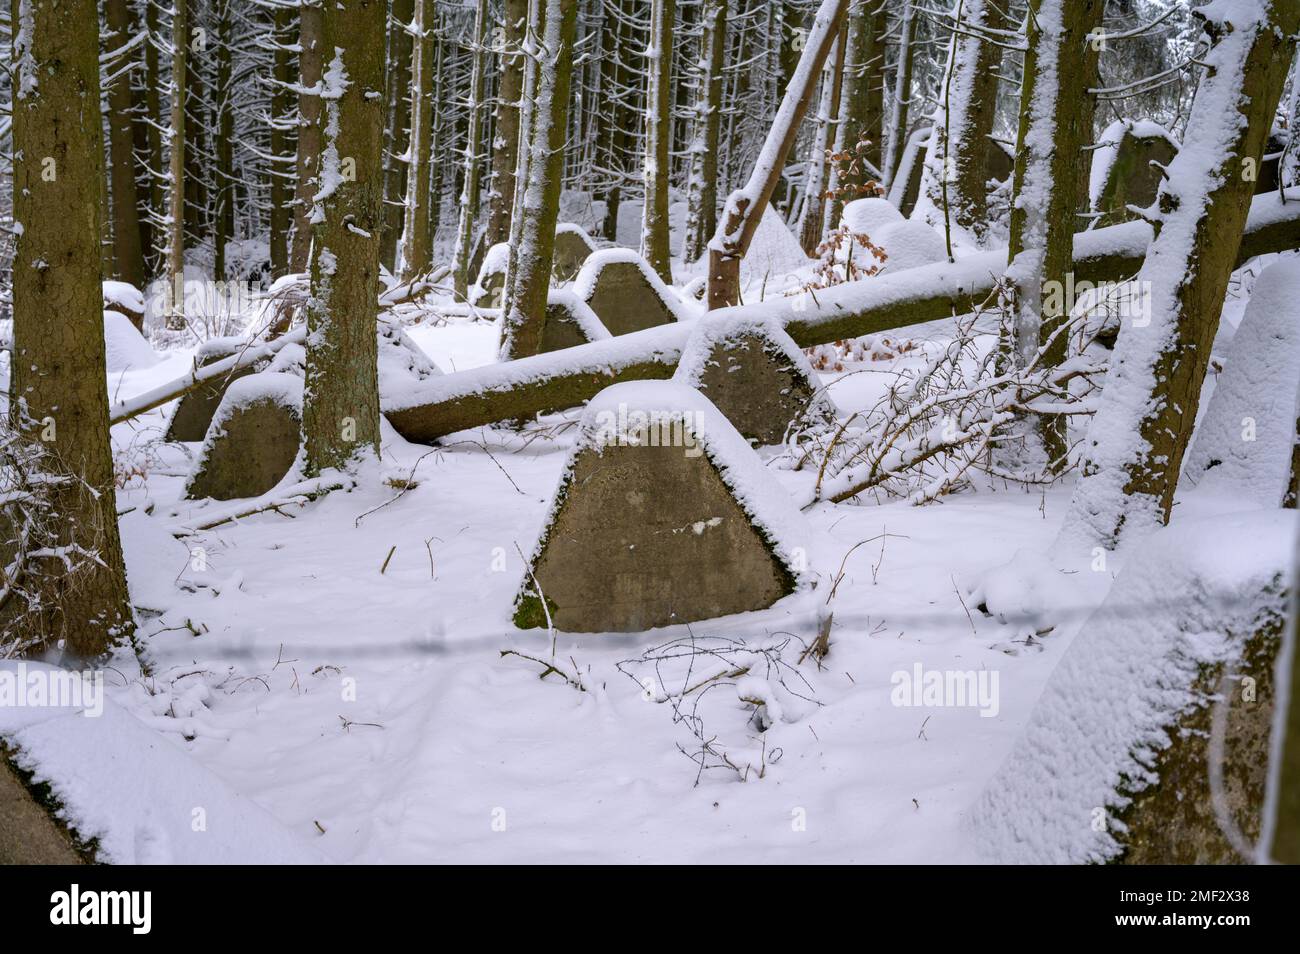 Plan moyen des dents du dragon anti-char recouvertes de neige dans une forêt Banque D'Images